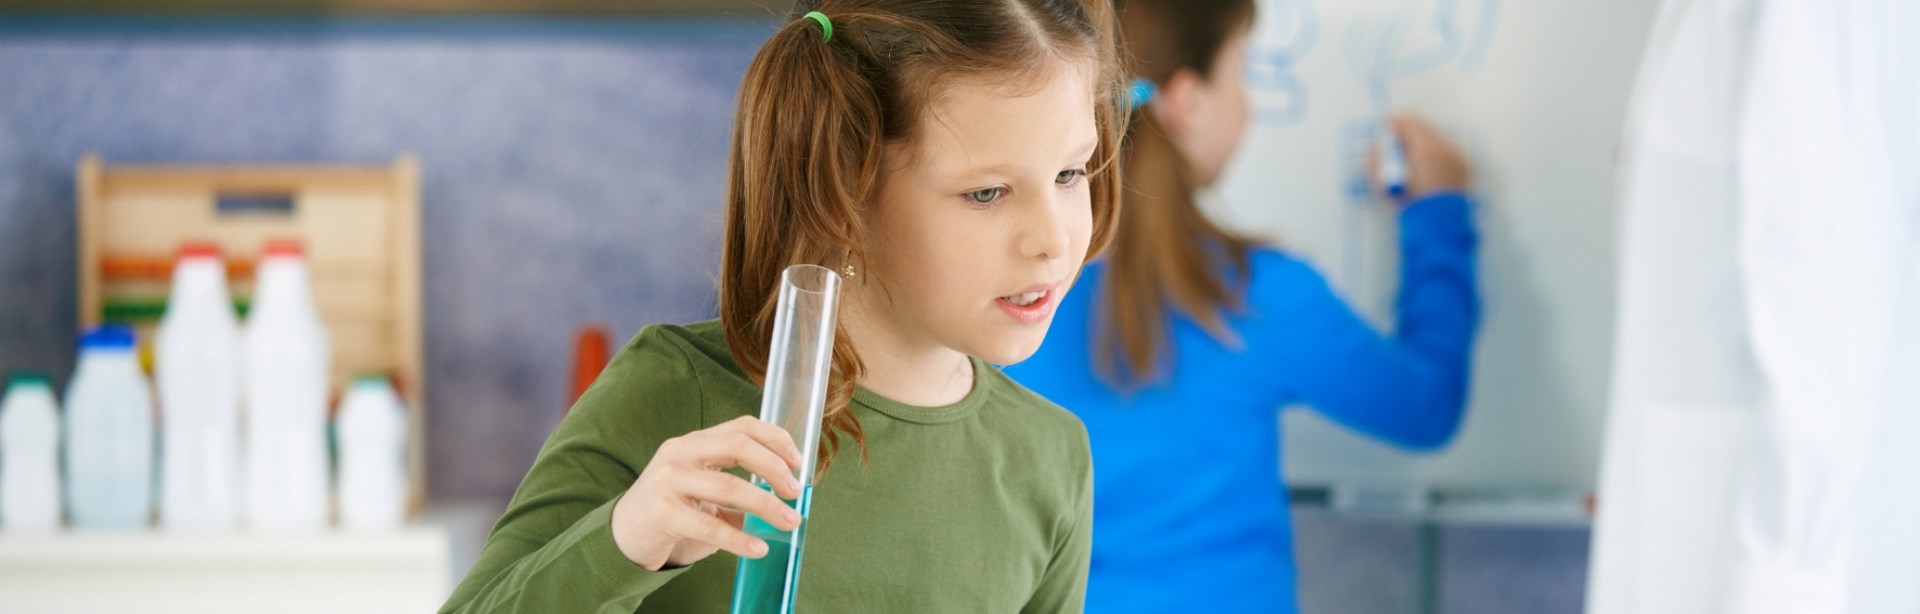 Imagen de portada de curso "Pensamiento científico en el Nivel Primario" - Se visualiza una preadolescente con un tubo de ensayo en la mano y otra chica escribiendo en un pizarrón